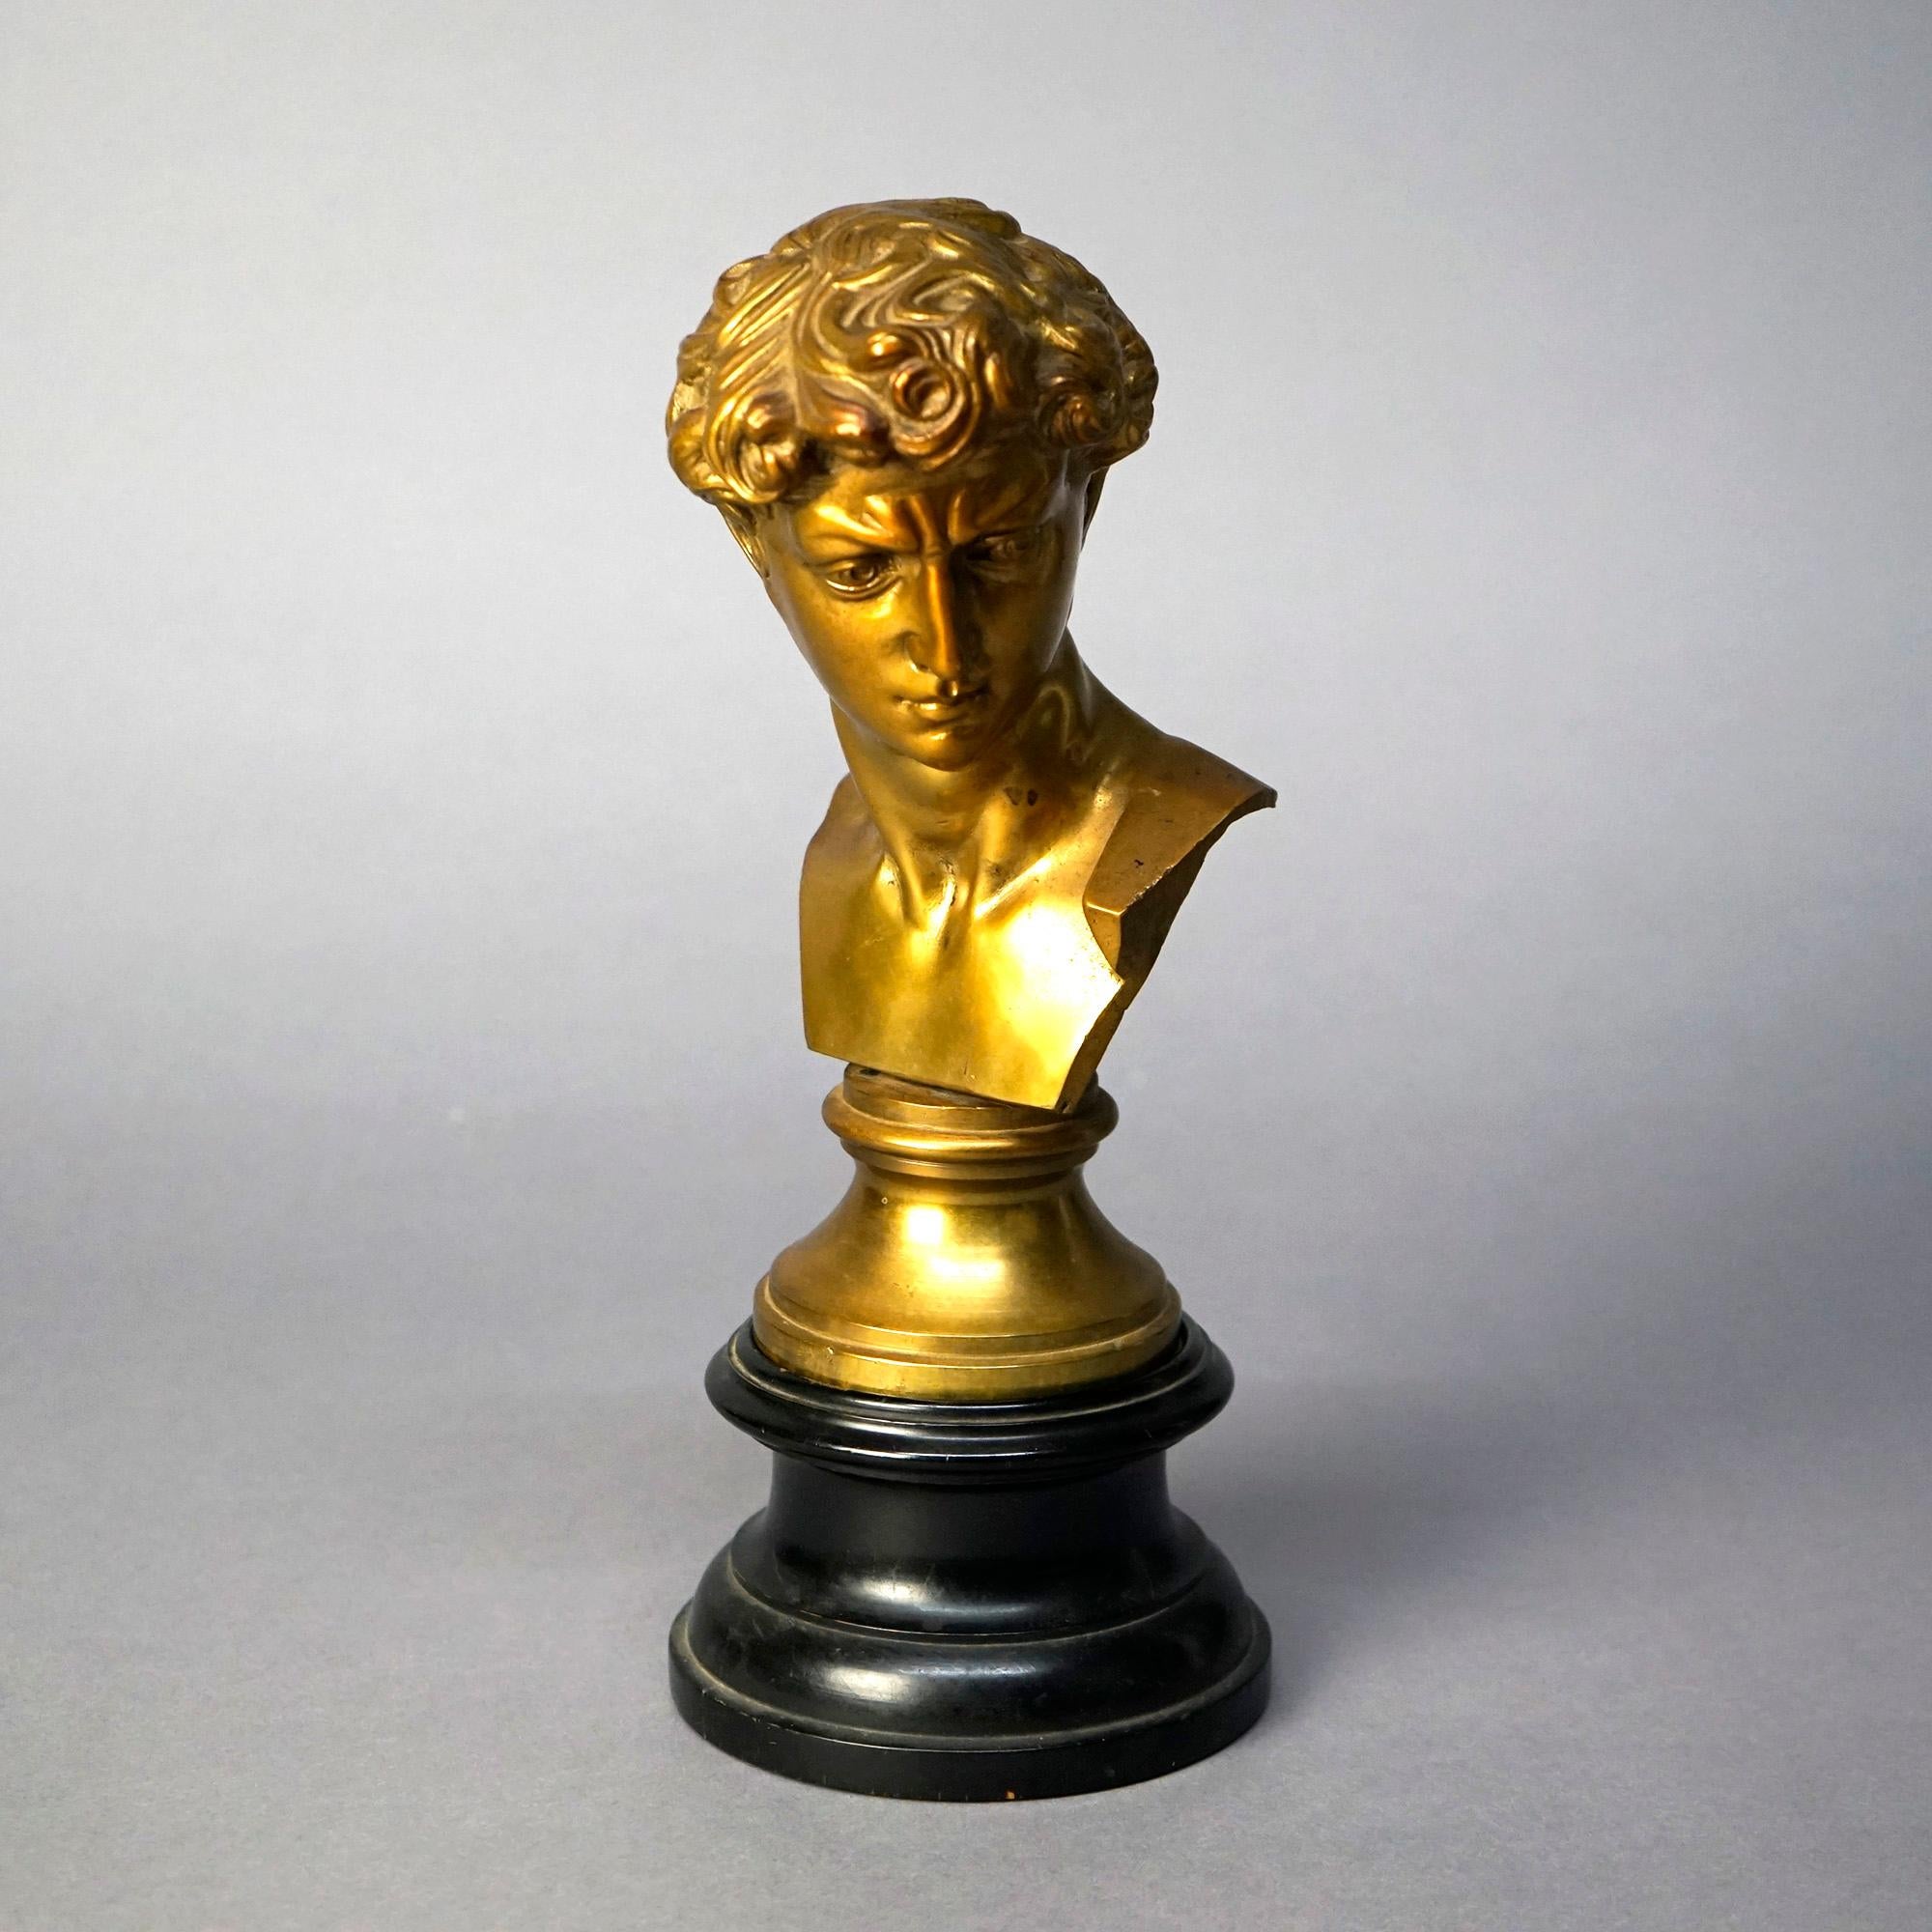 Une sculpture néoclassique ancienne offre une construction en bronze coulé et doré et représente le buste d'un homme classique, 19e siècle

Mesures- 12''H x 4.75''W x 6''D